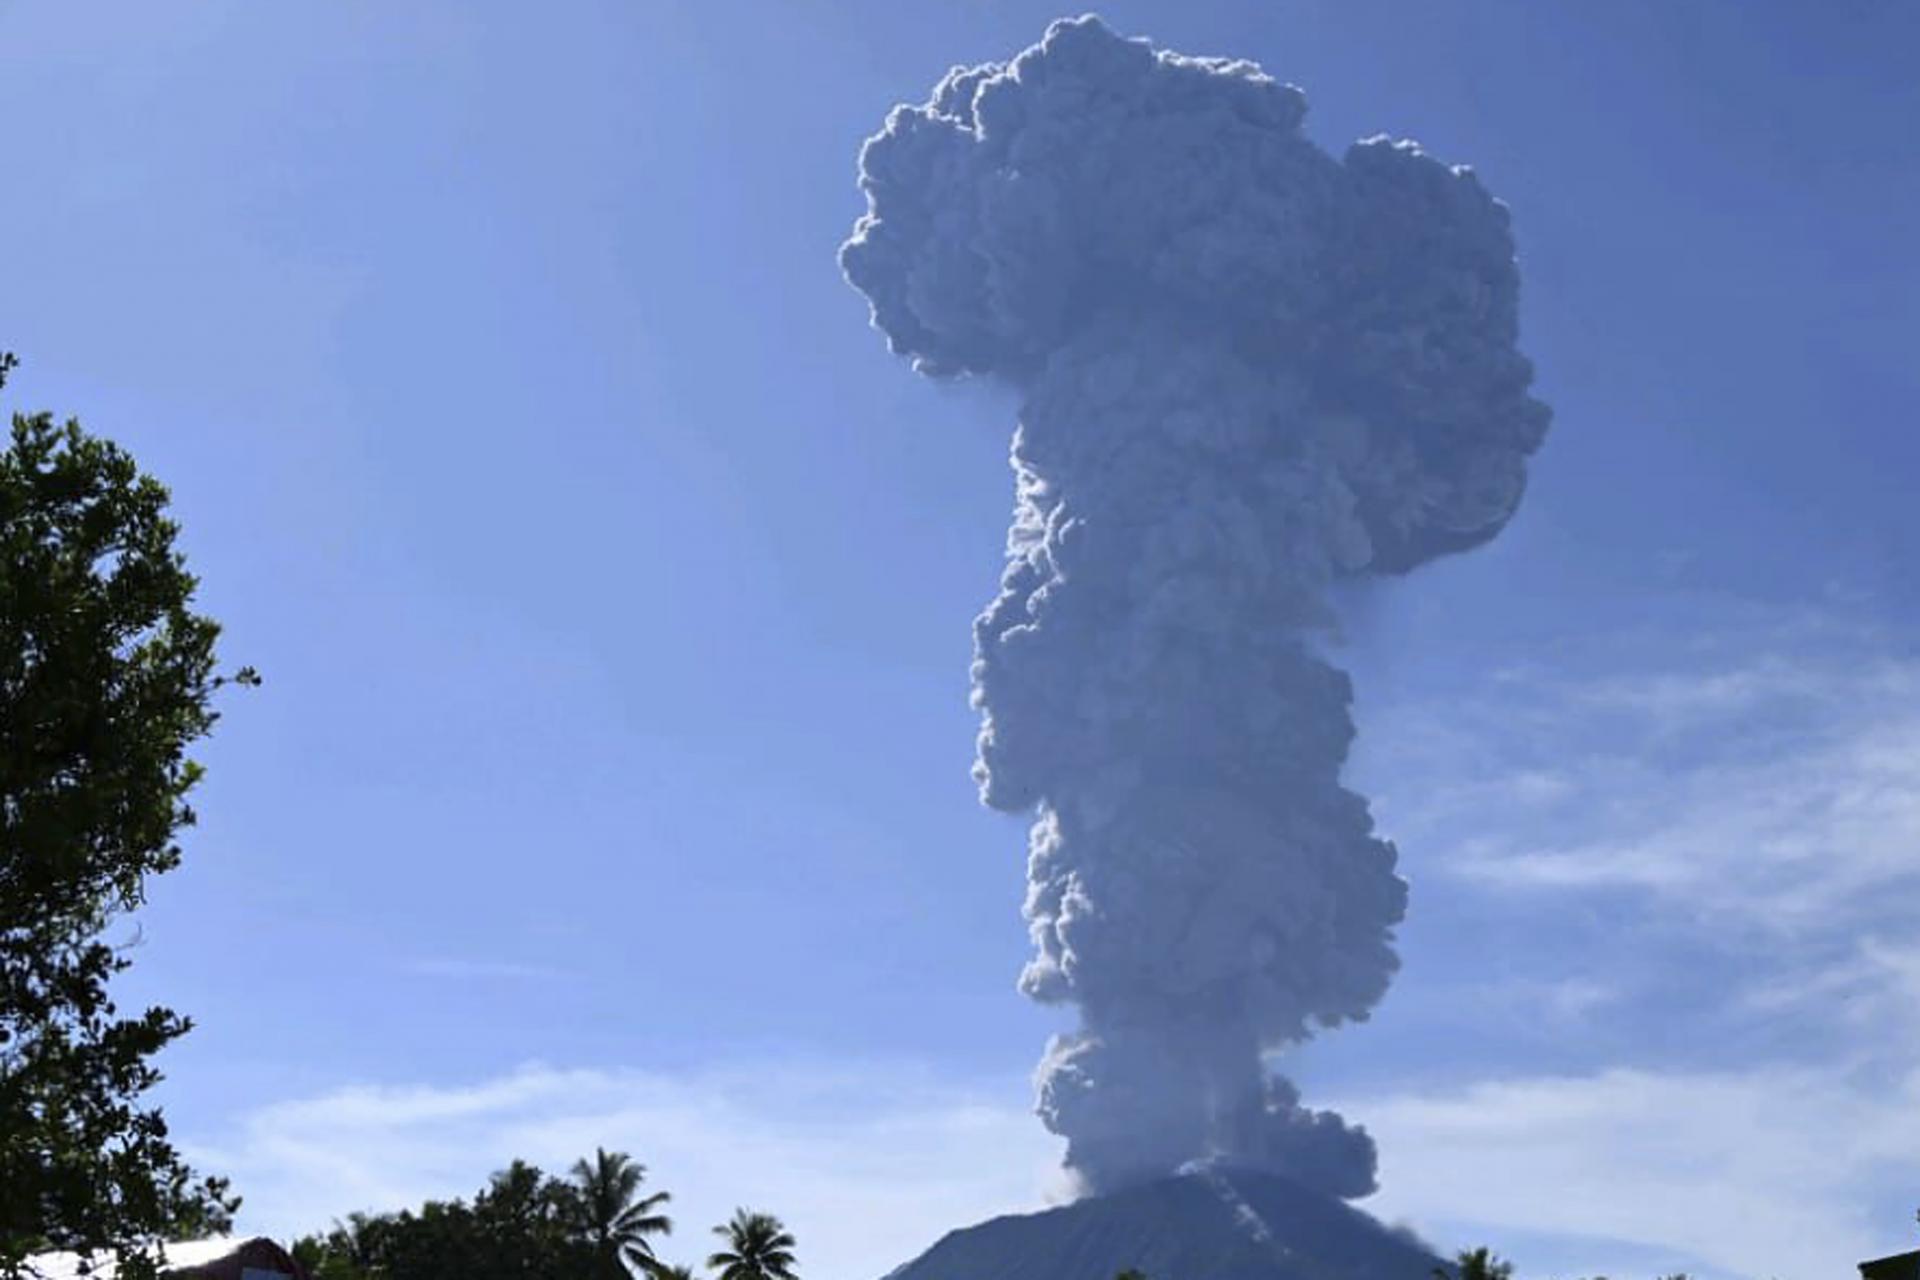 Indonézska sopka Ibu opäť vybuchla, do ovzdušia chrlí popol